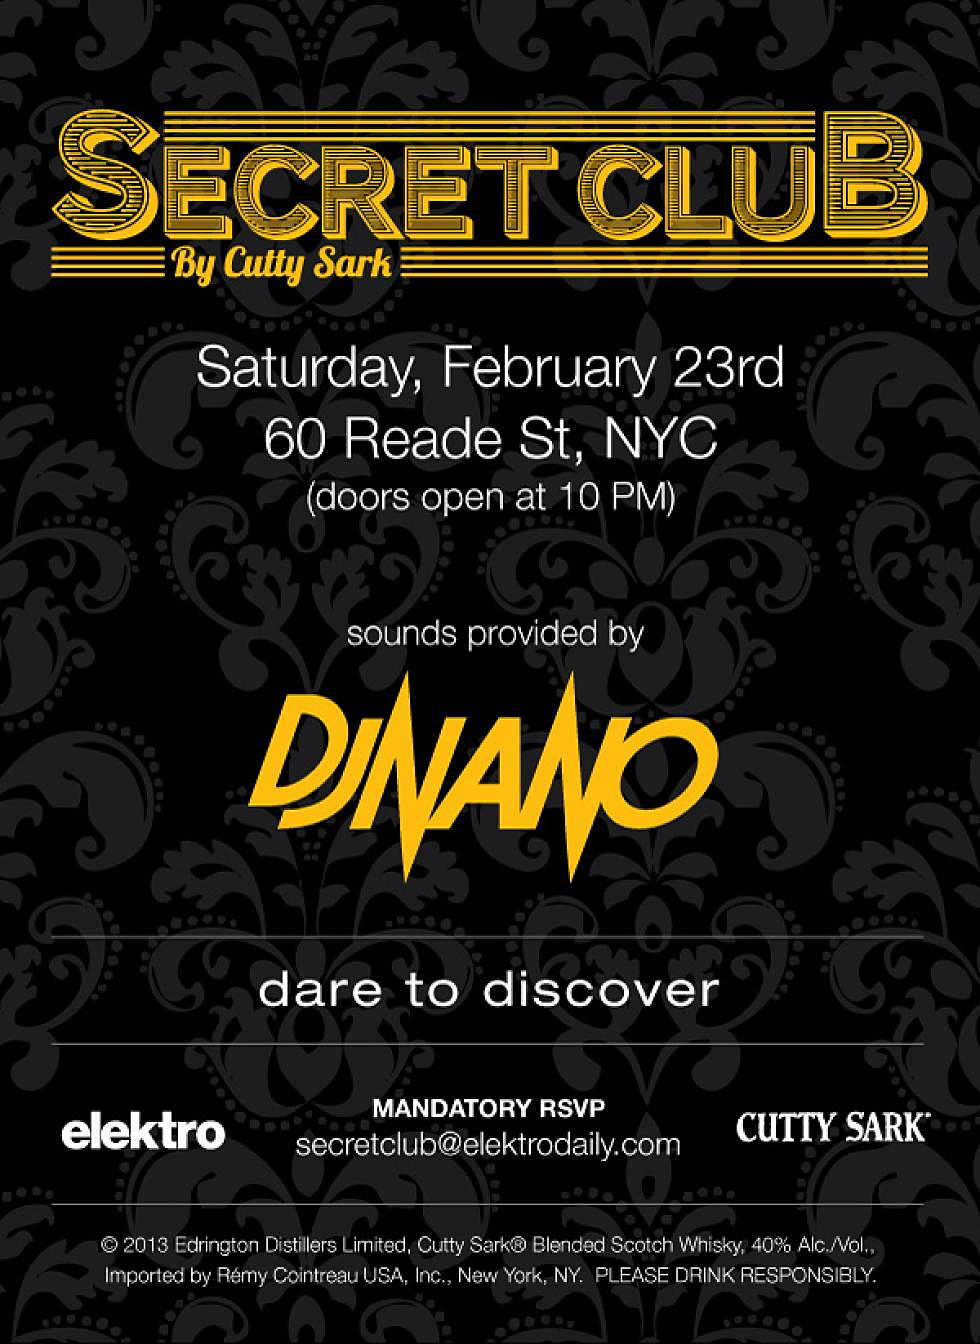 Cutty Sark Presents: Secret Club February 23rd